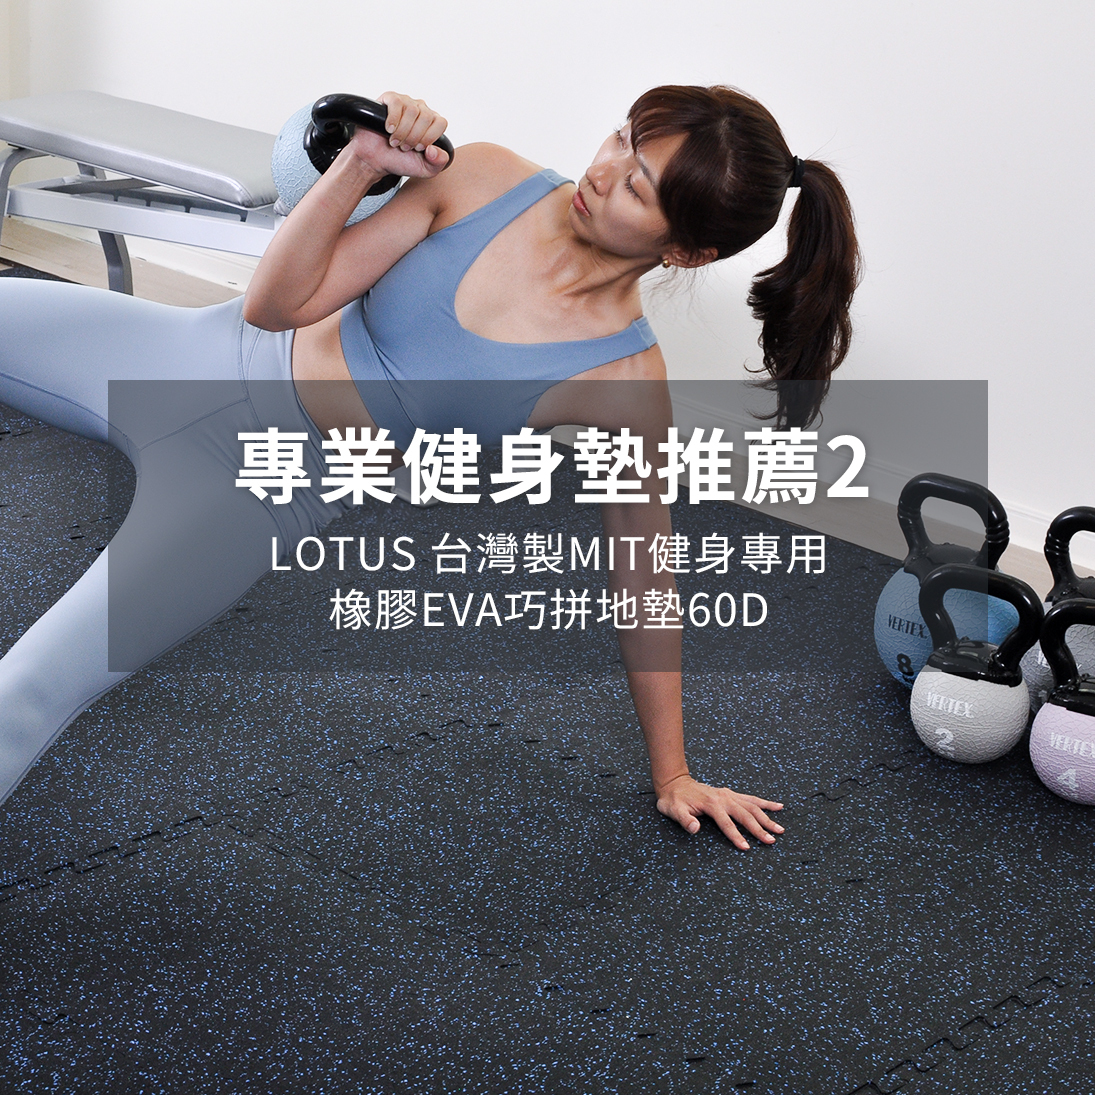 健身墊推薦:LOTUS台灣製健身專用橡膠地墊